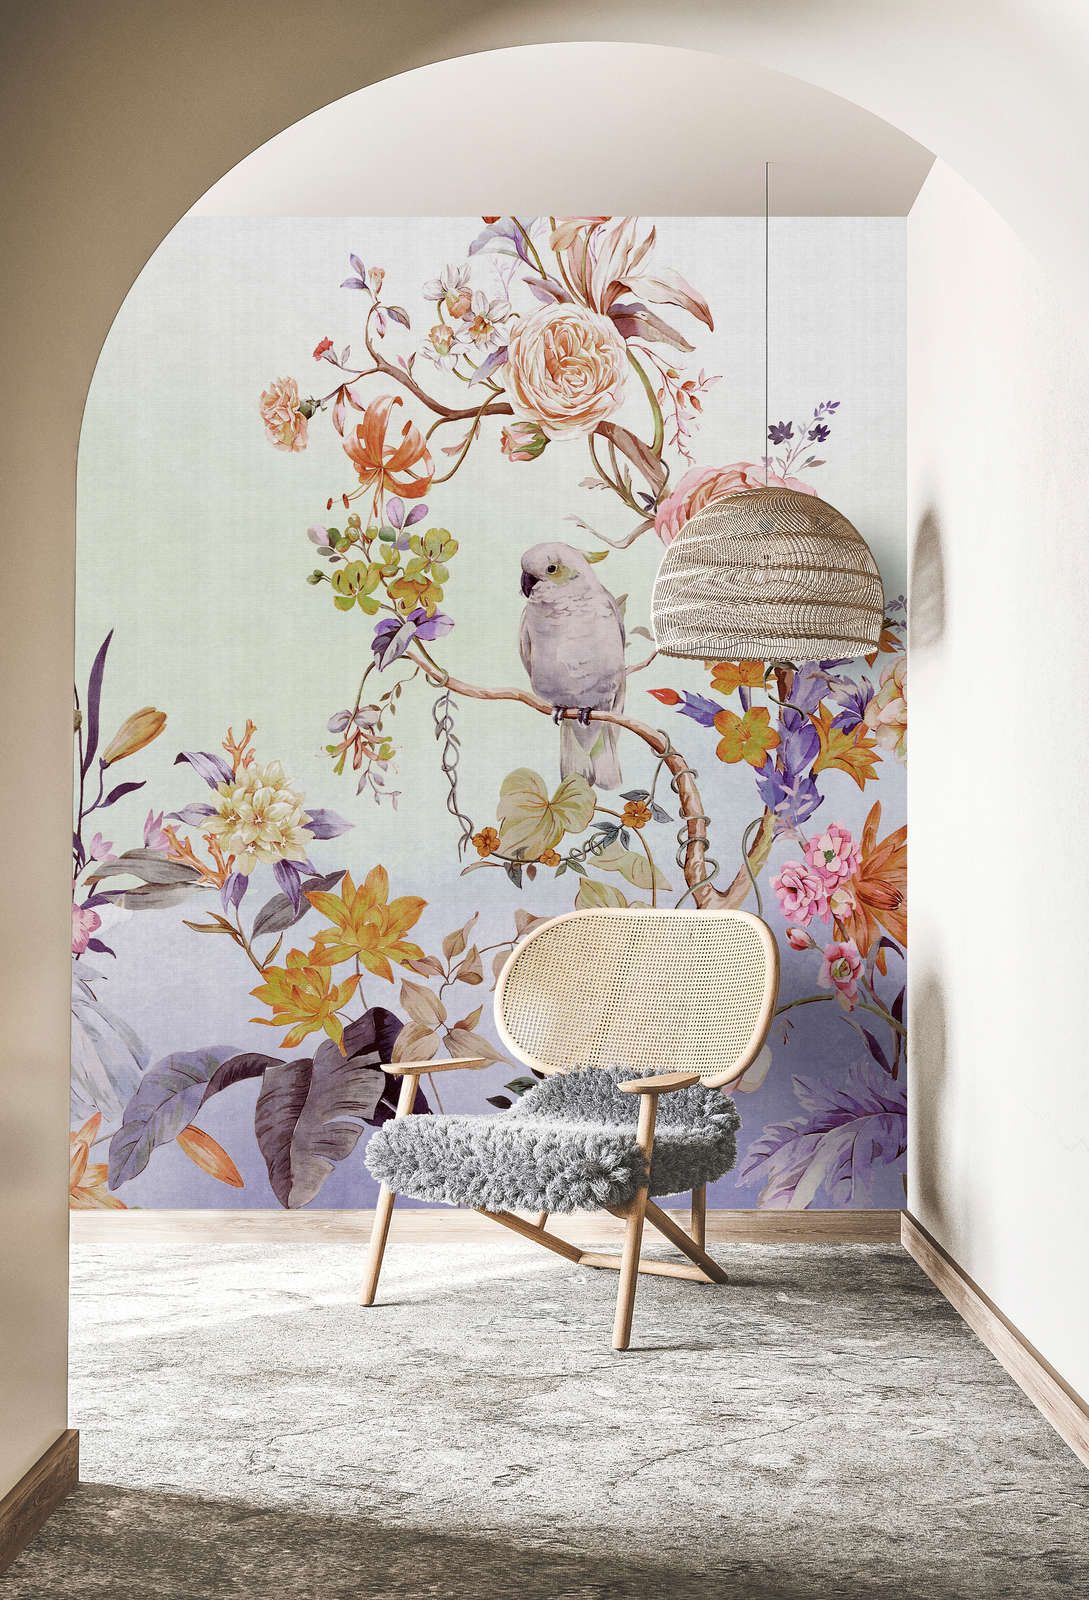             Digital behang »paradijs« - Vogel & bloemen met kleurverloop en linnen textuur op de achtergrond - Bont | Mat, Glad vlies
        